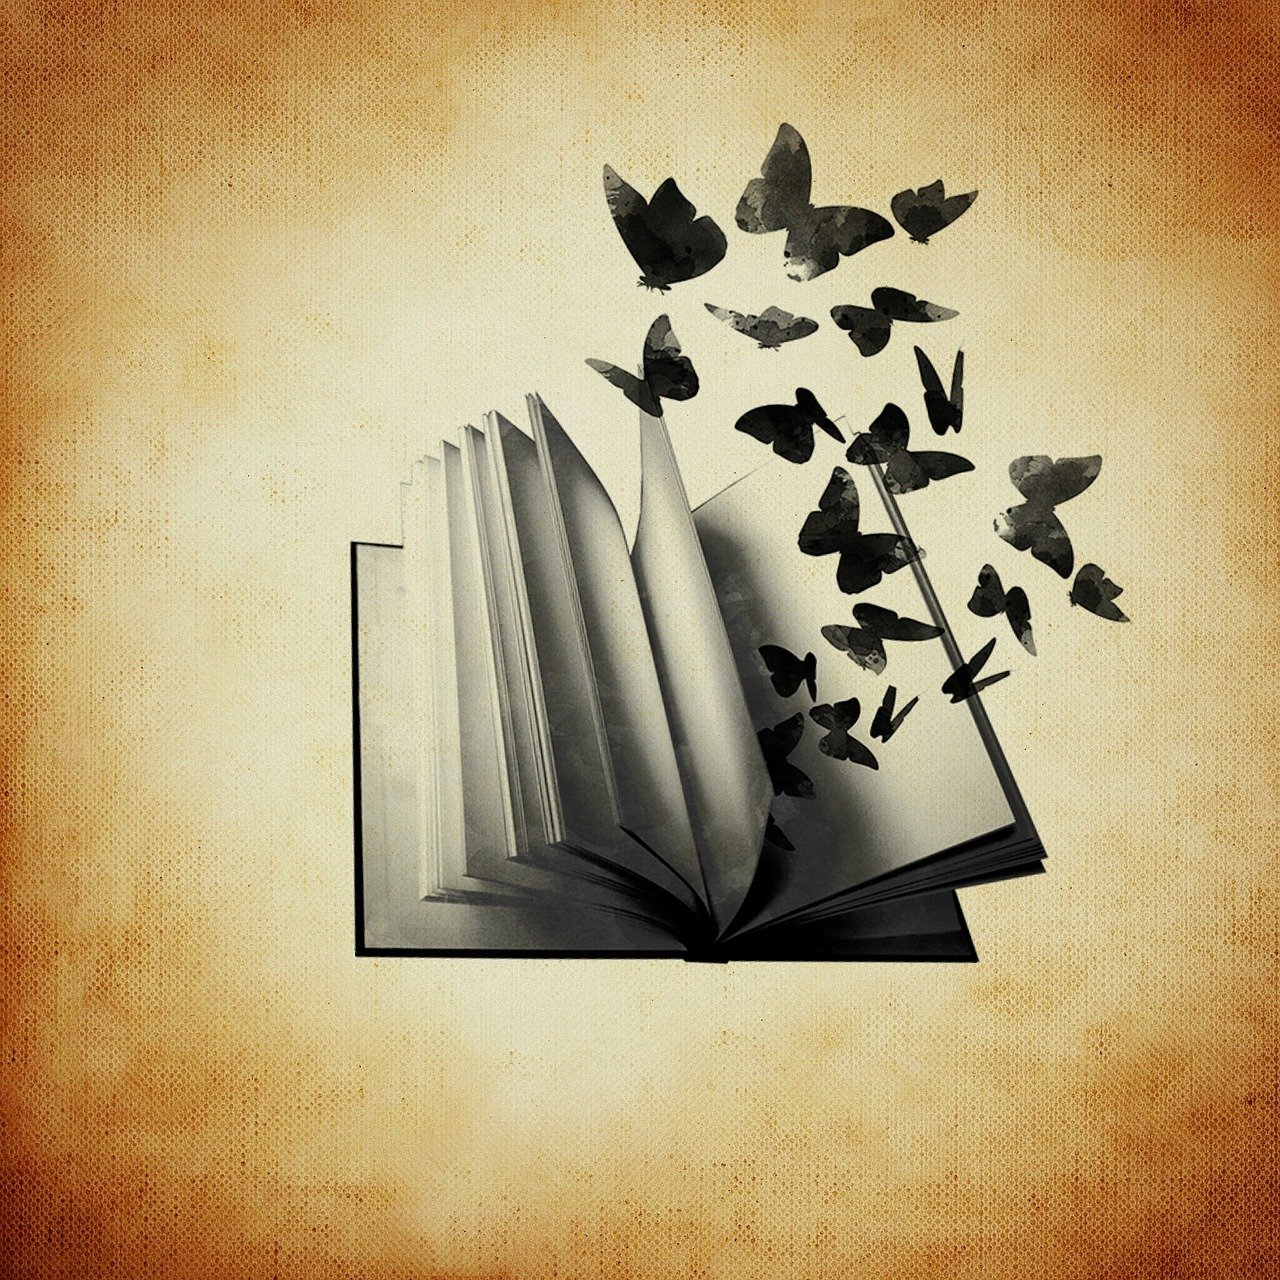 a book, butterflies, freedom-730479.jpg